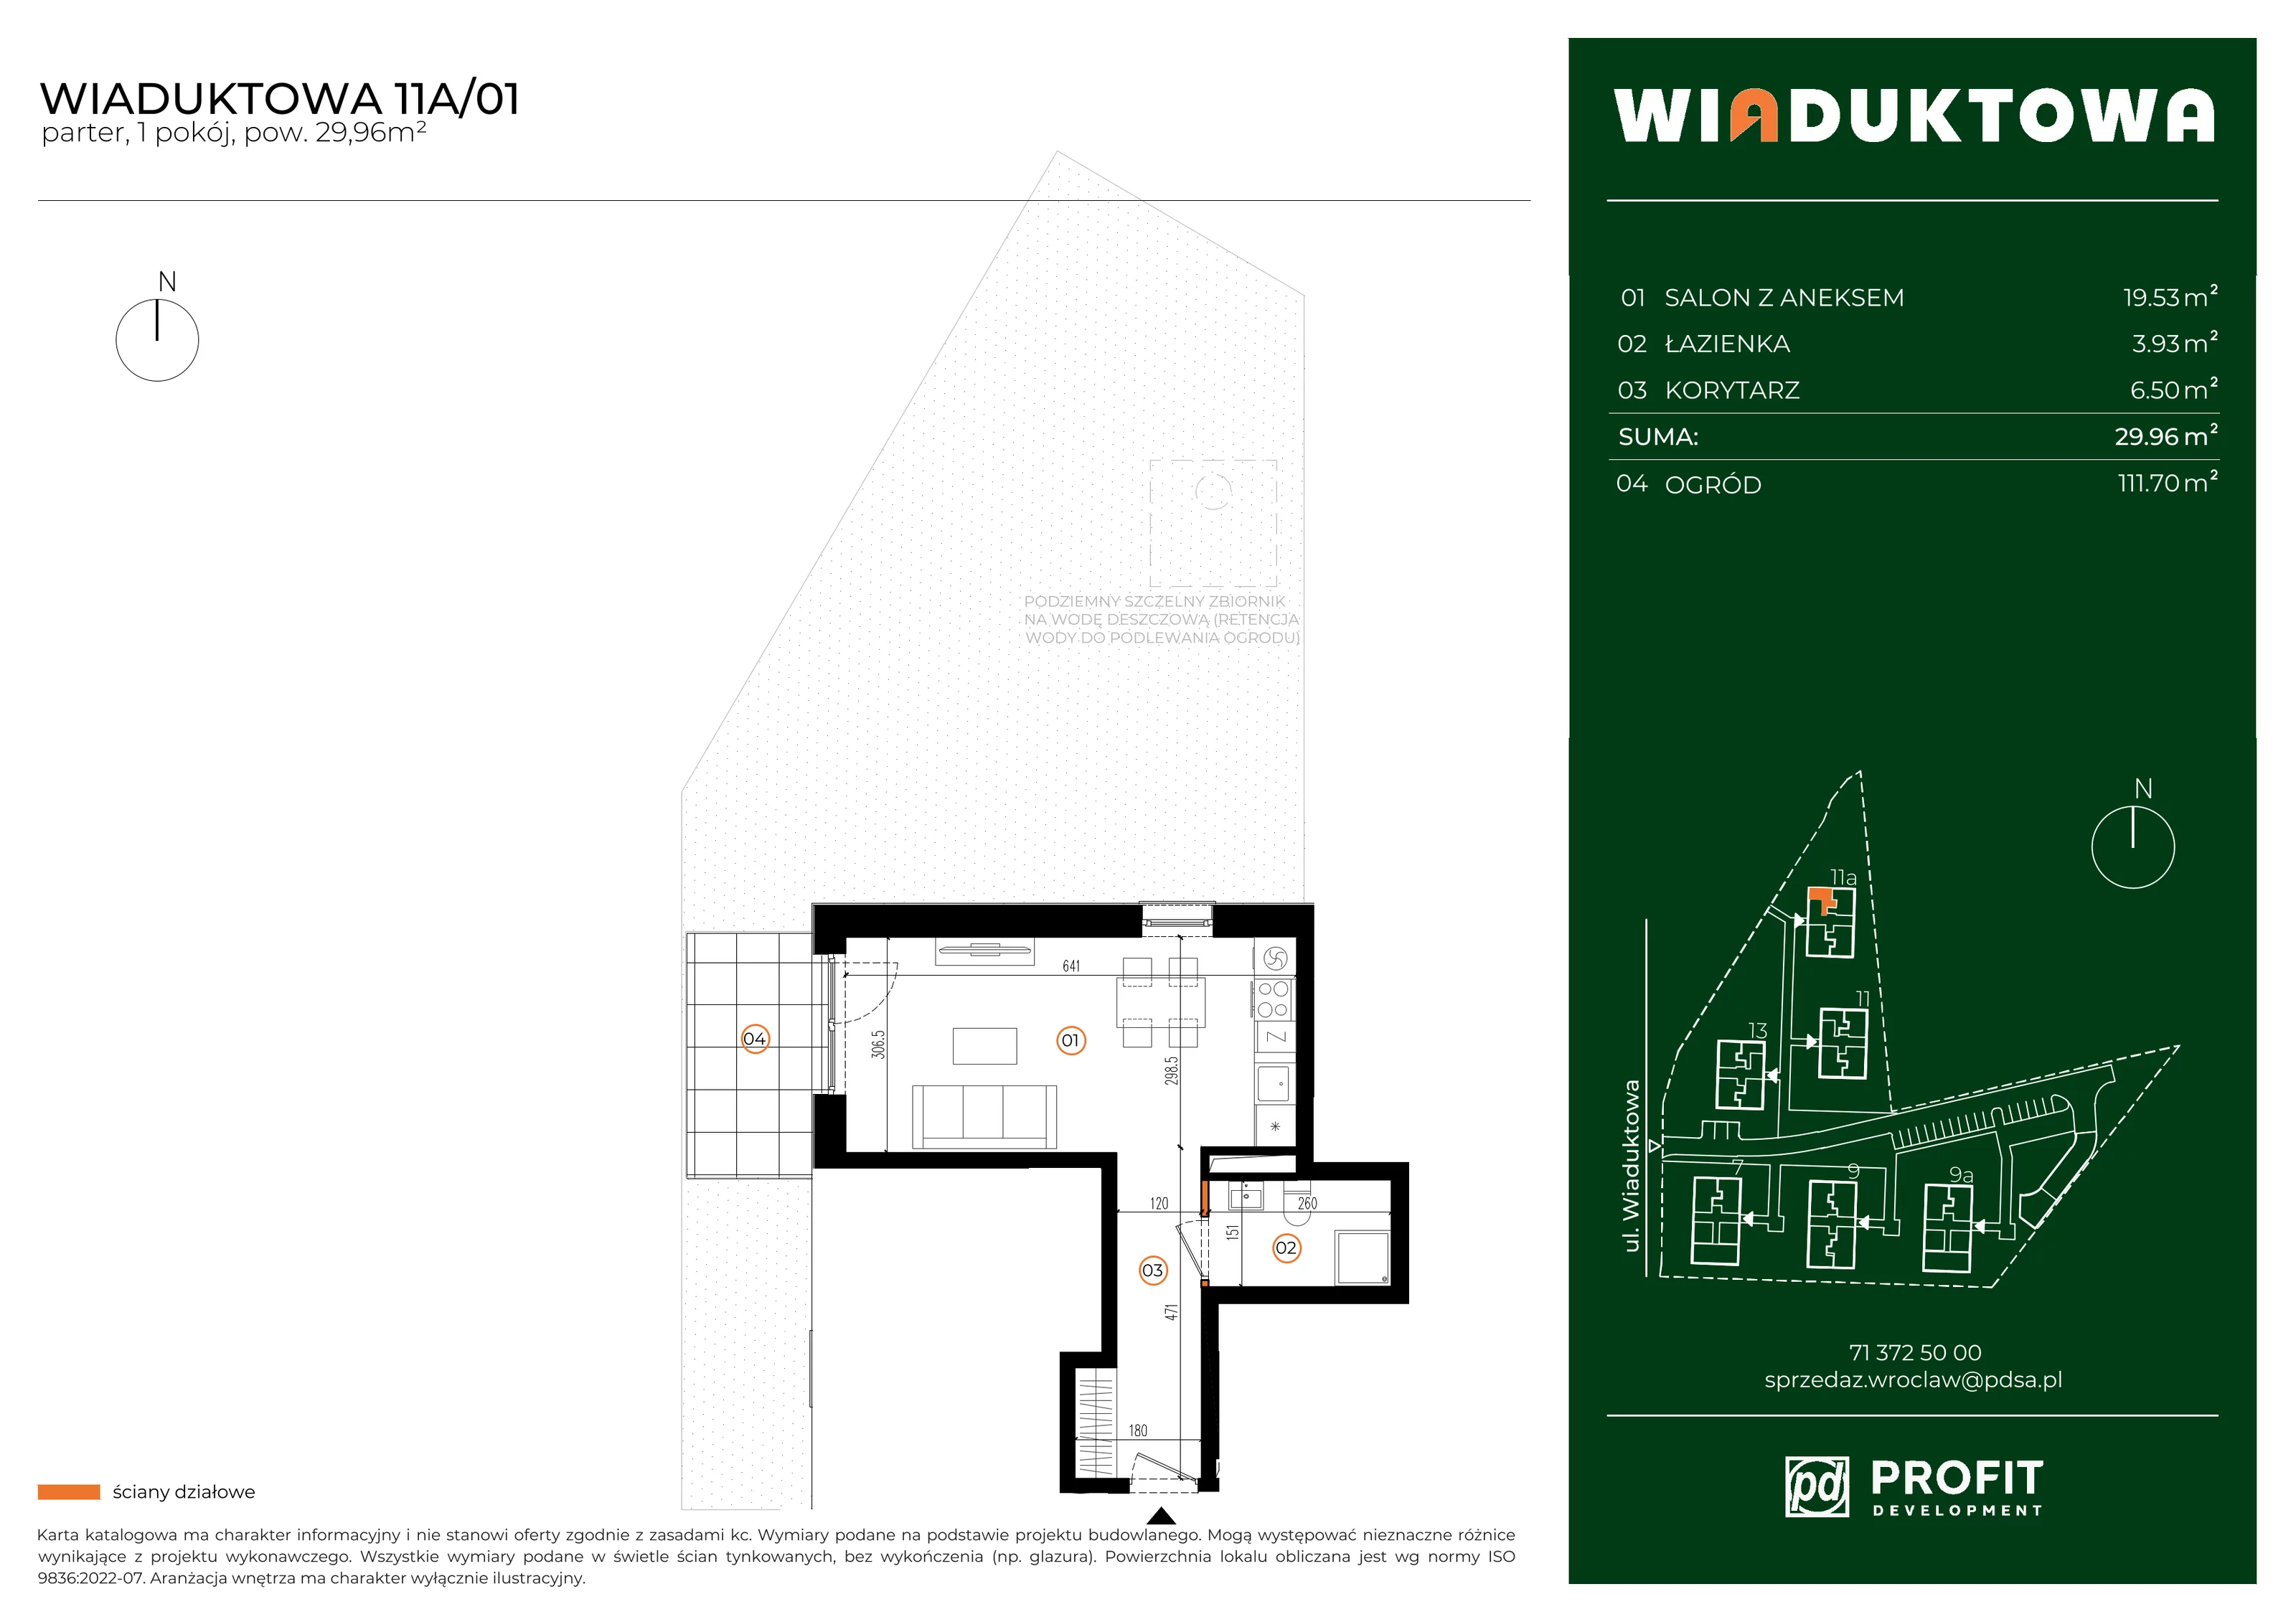 Mieszkanie 29,96 m², parter, oferta nr WI/11A/01, Wiaduktowa, Wrocław, Krzyki-Partynice, Krzyki, ul. Wiaduktowa